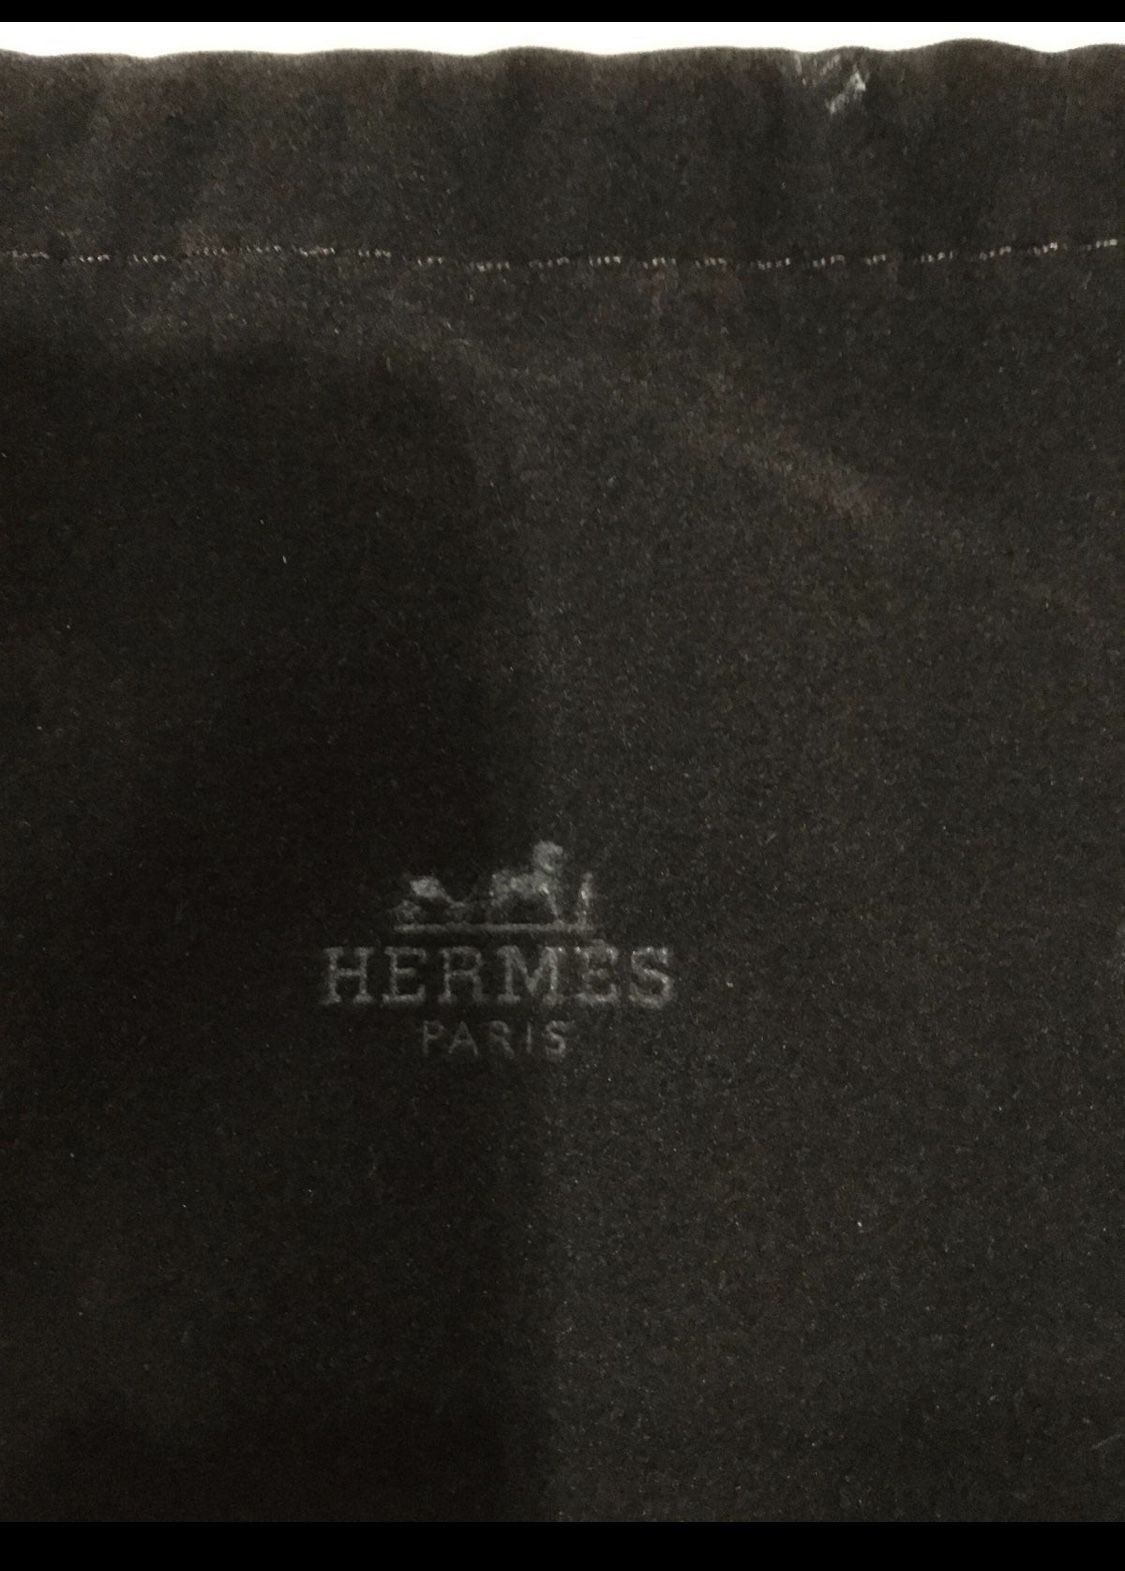 1 Hermes Small Dust Bag